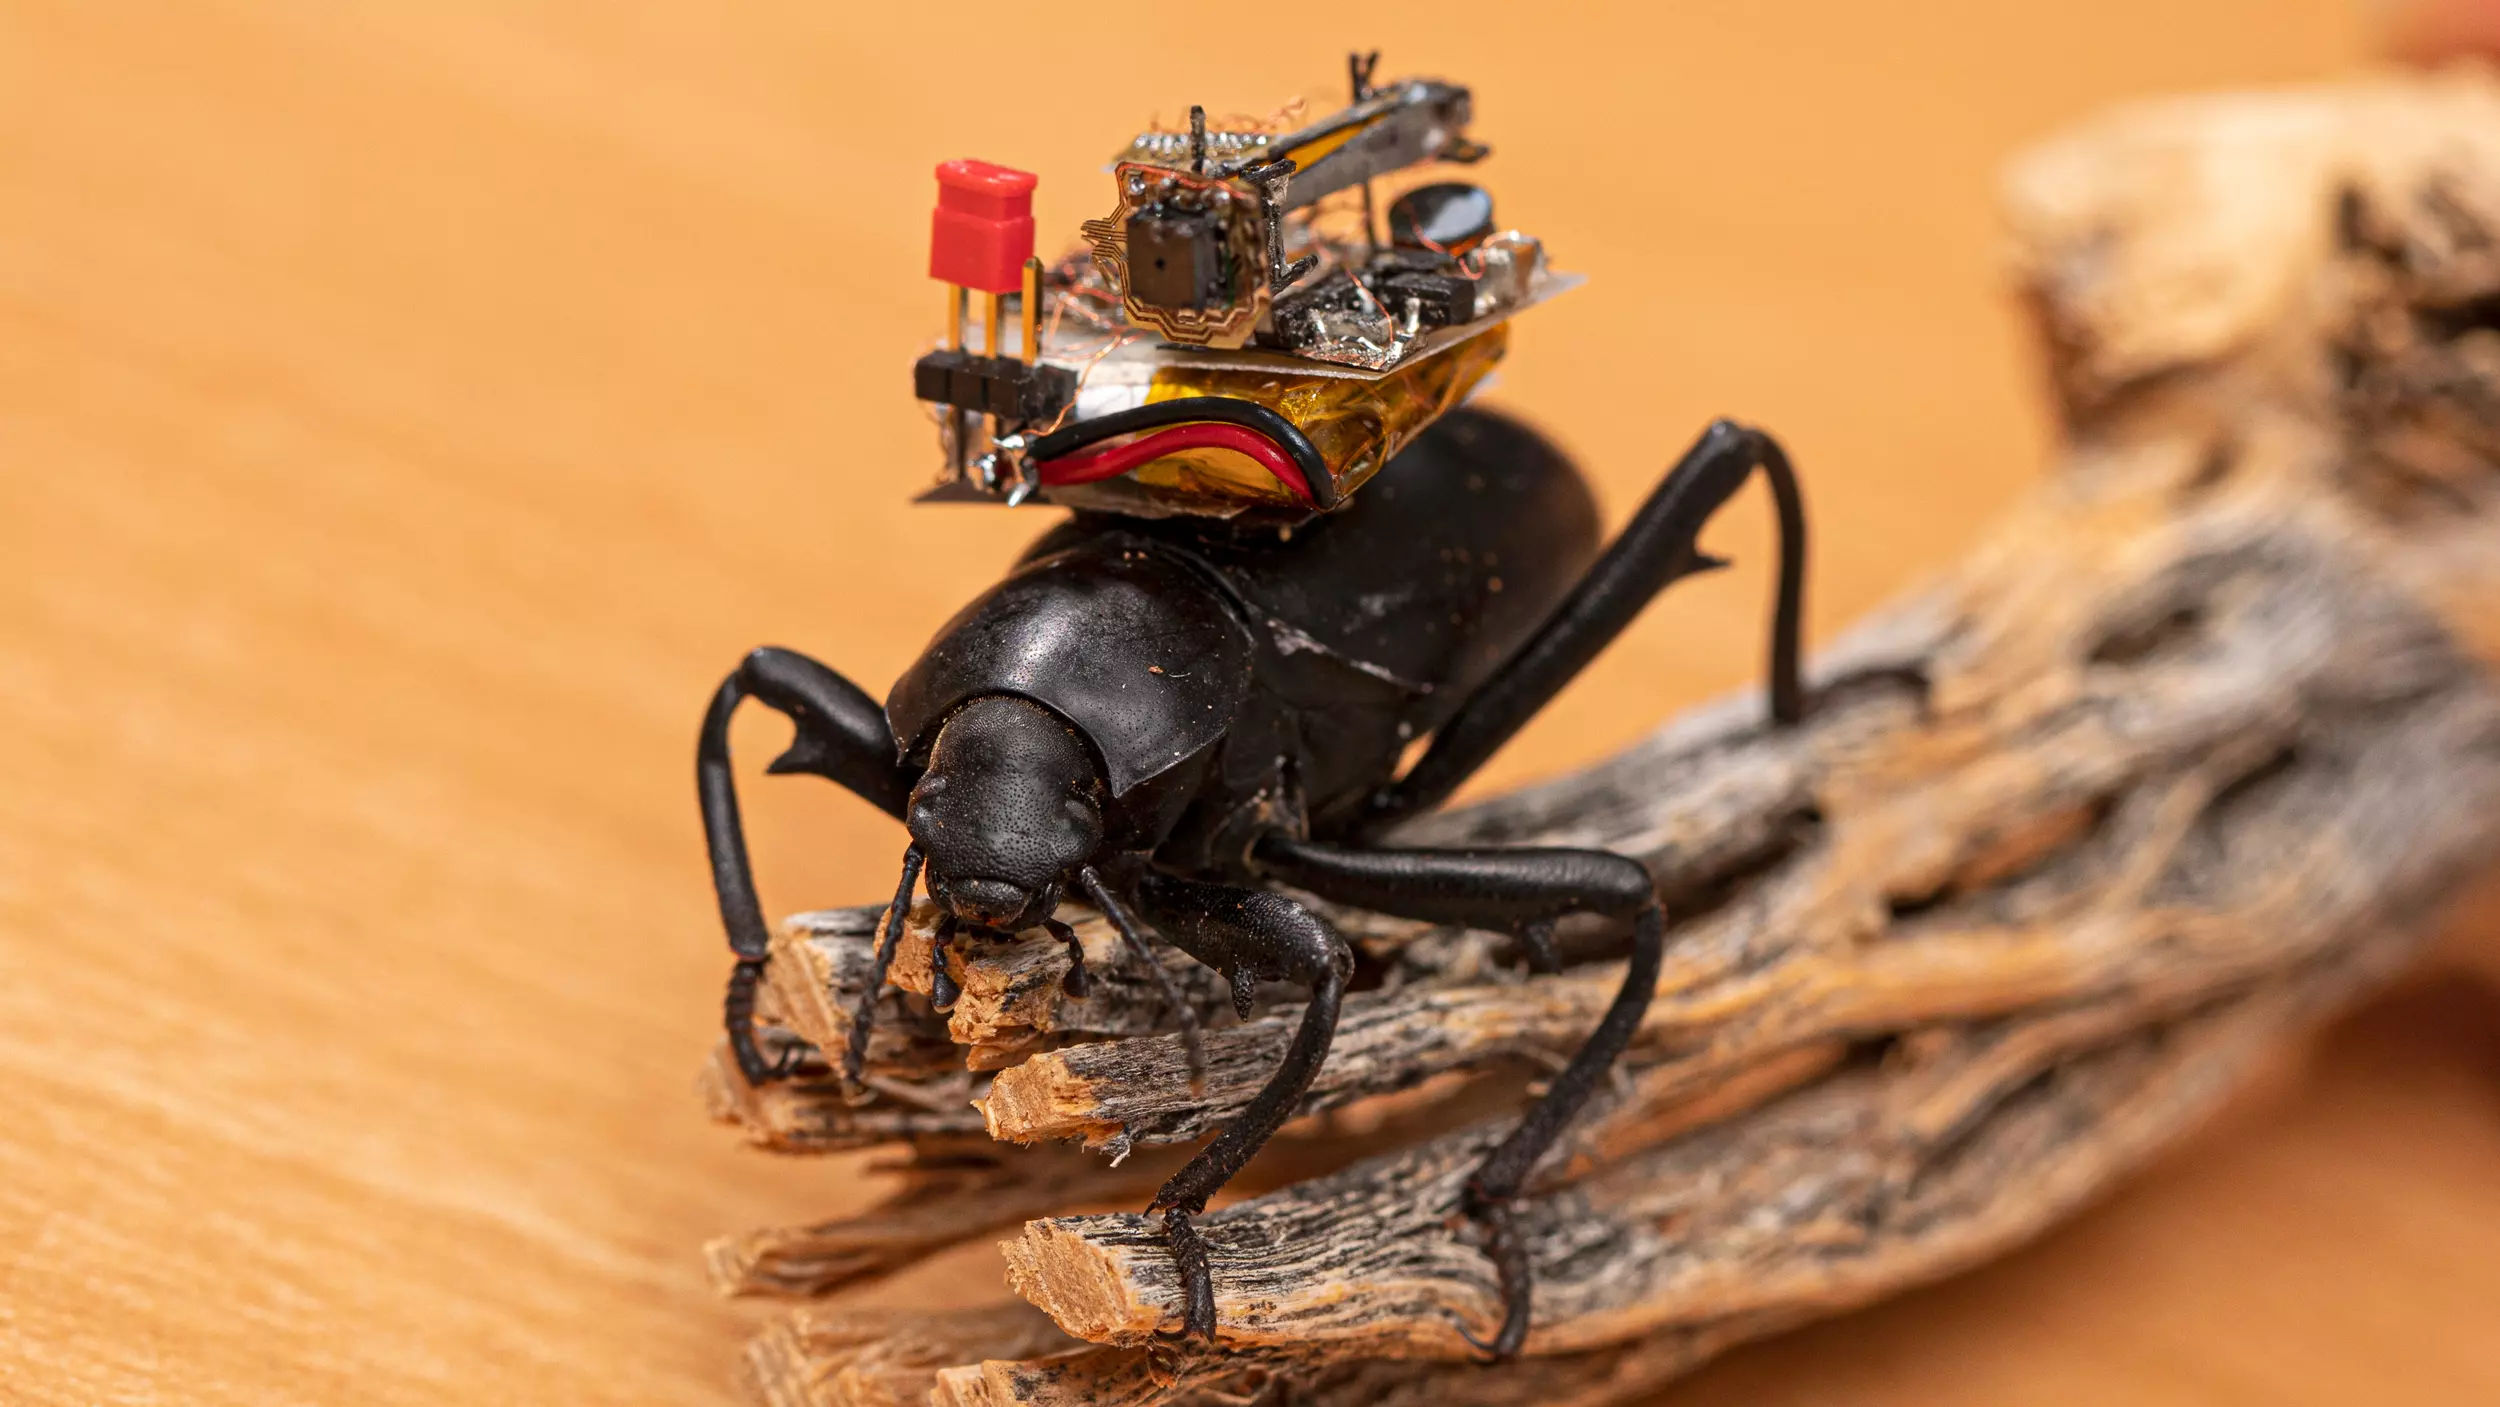 Picurka kamerákkal vizsgálják a bogarak titkos életét